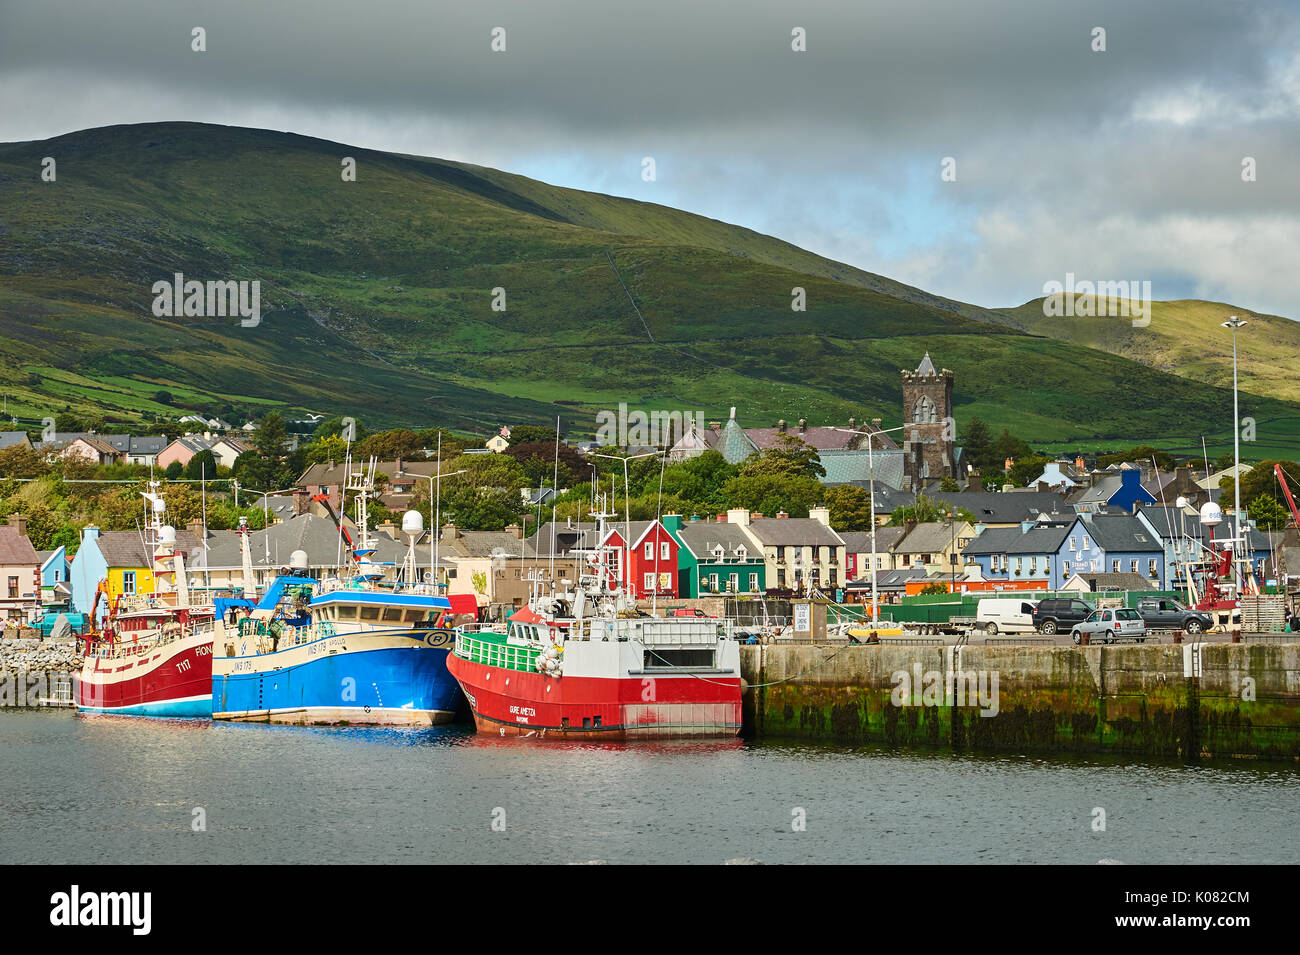 Dingle, Condado de Kerry en la República de Irlanda y una colección de barcos de pesca están amarrados en el pequeño puerto de pescadores. Foto de stock